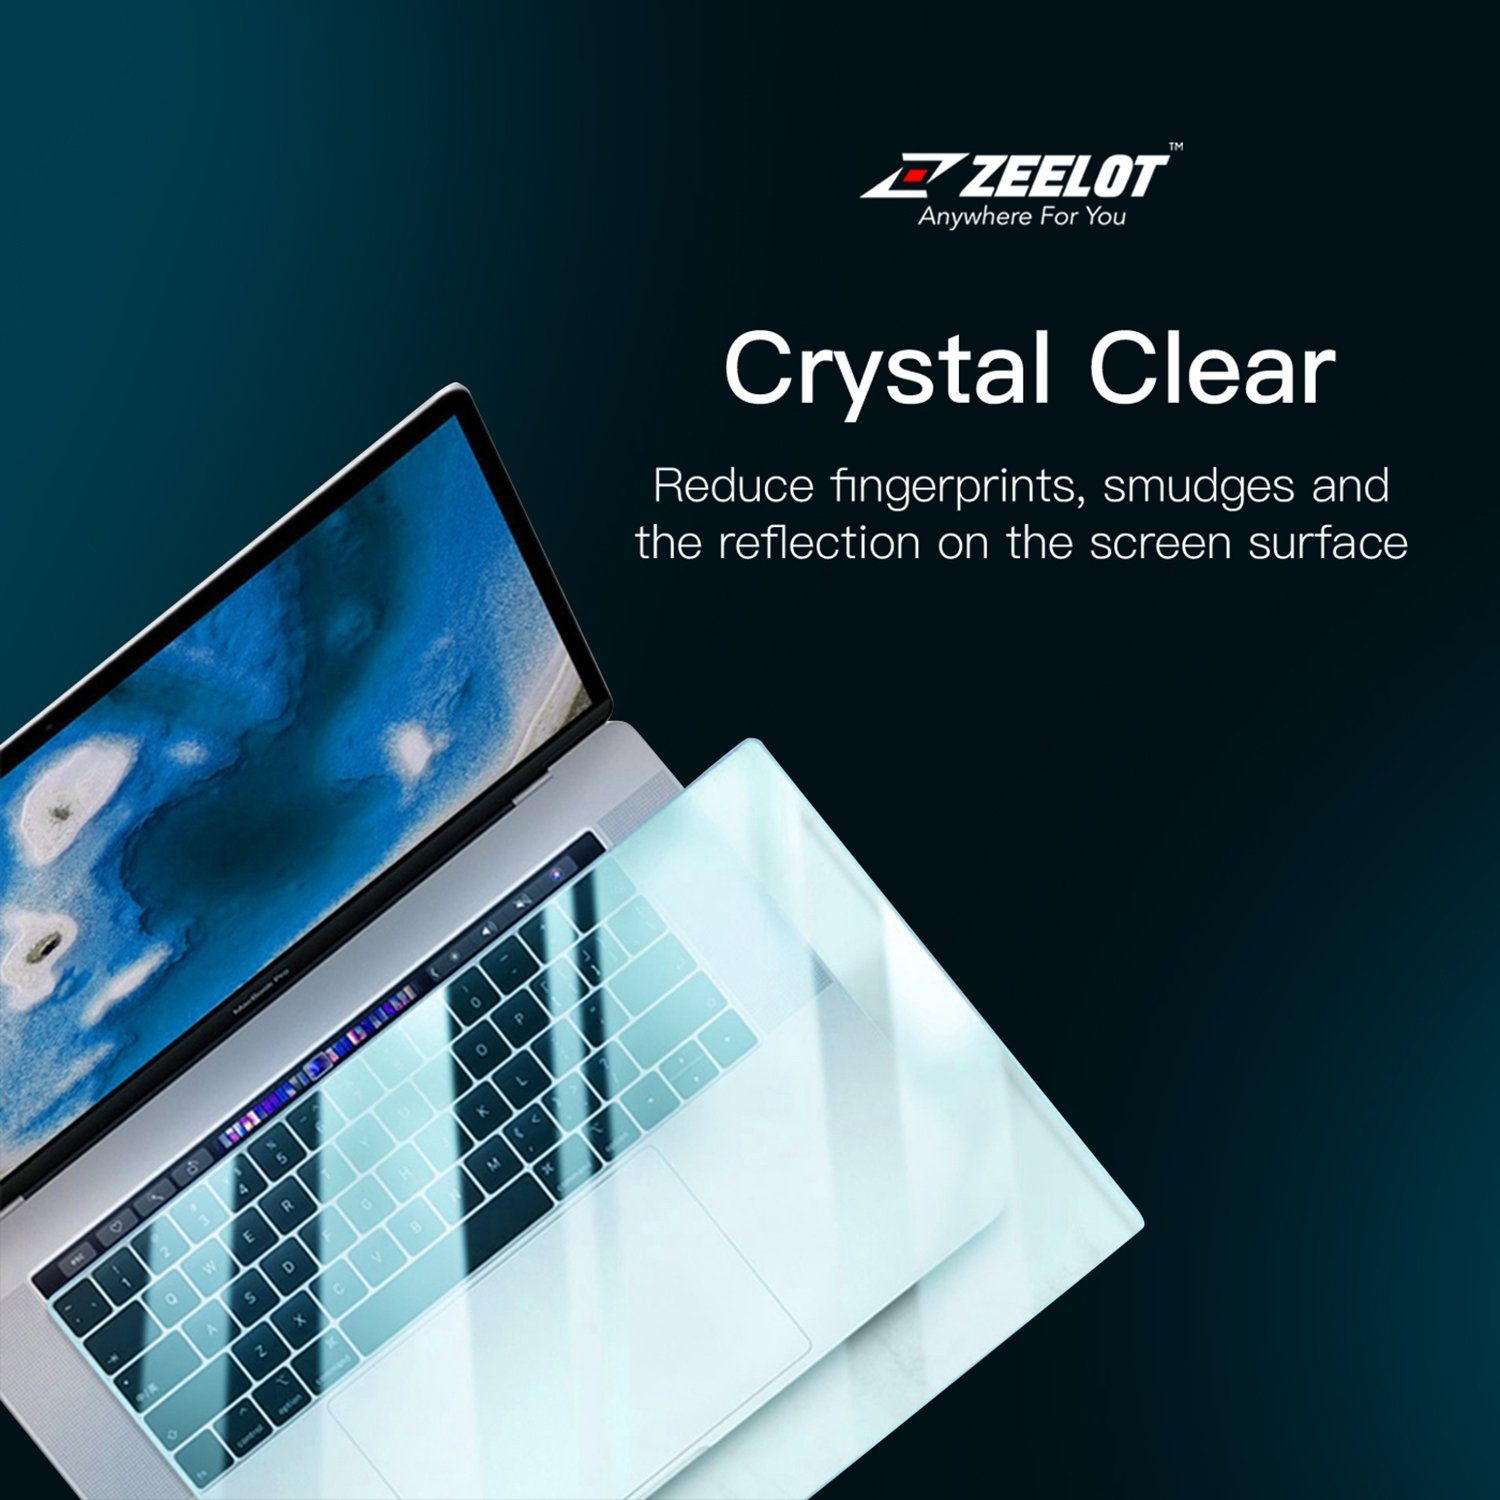 ZEELOT PureShield Crystal Film Screen Protector for MacBook Air(2018-2020)/ Macbook Pro 13"(2017-2020) Default Zeelot 